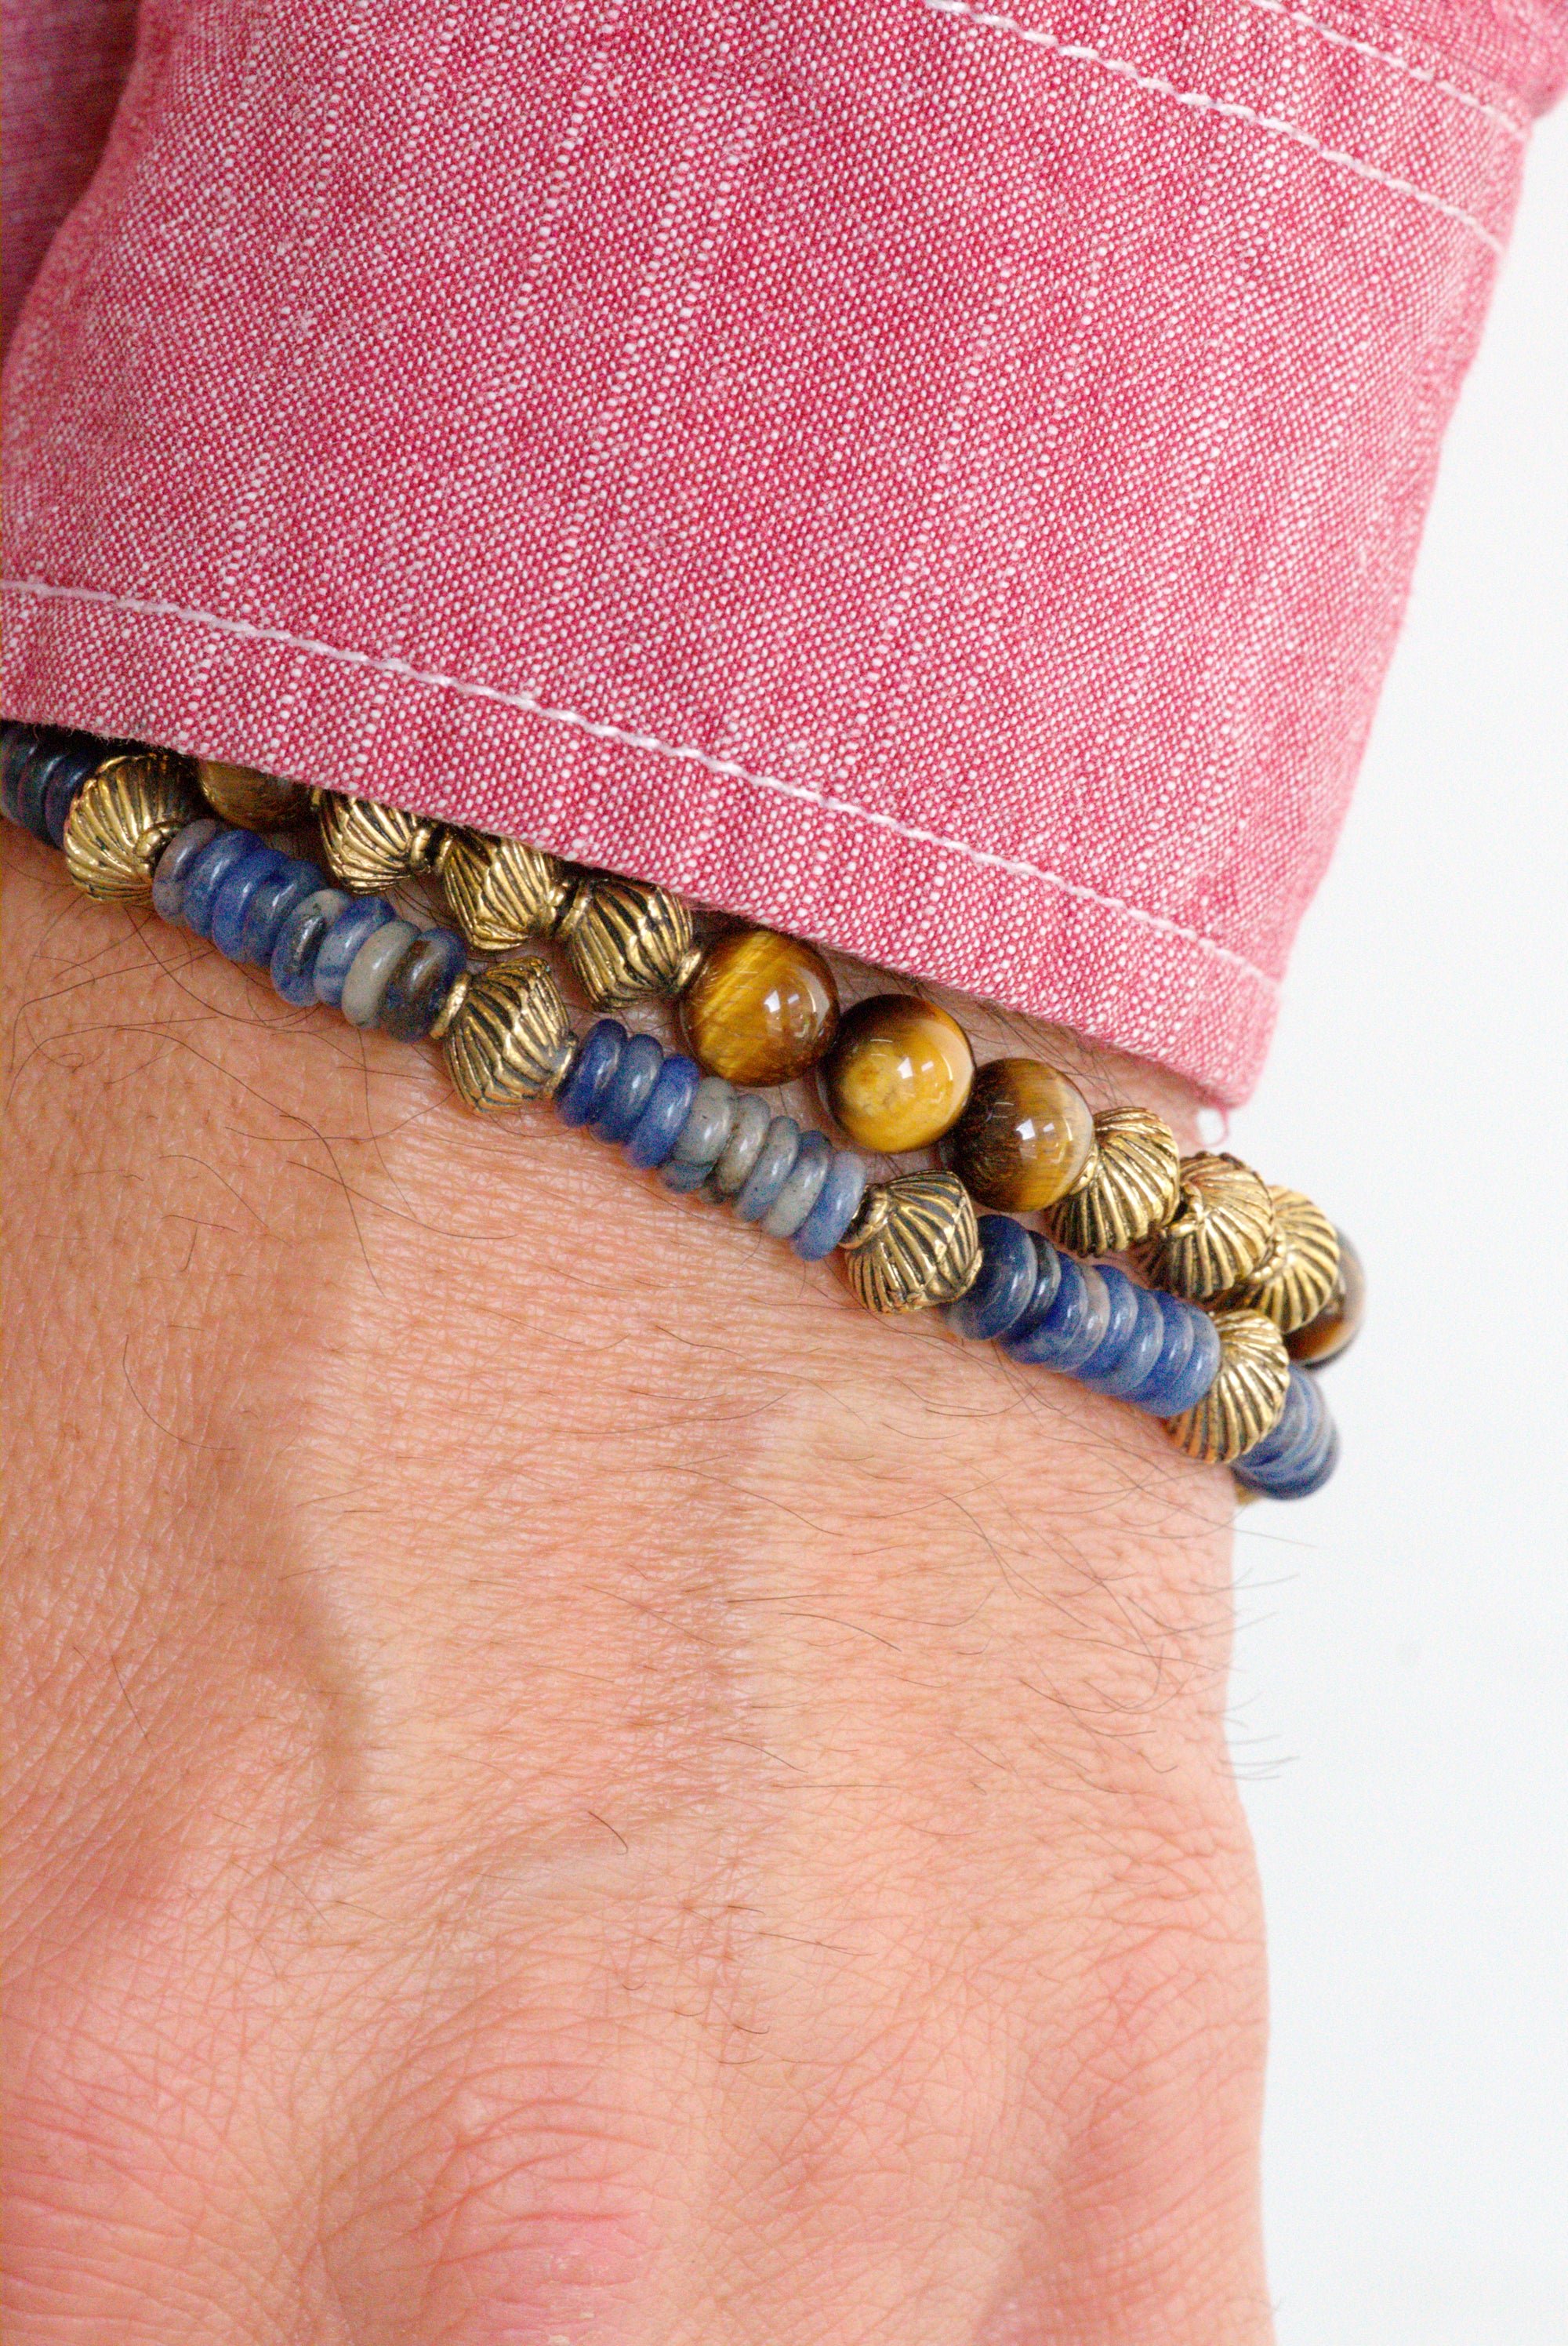 Tranquility stone bracelet set by Jenny Dayco 10